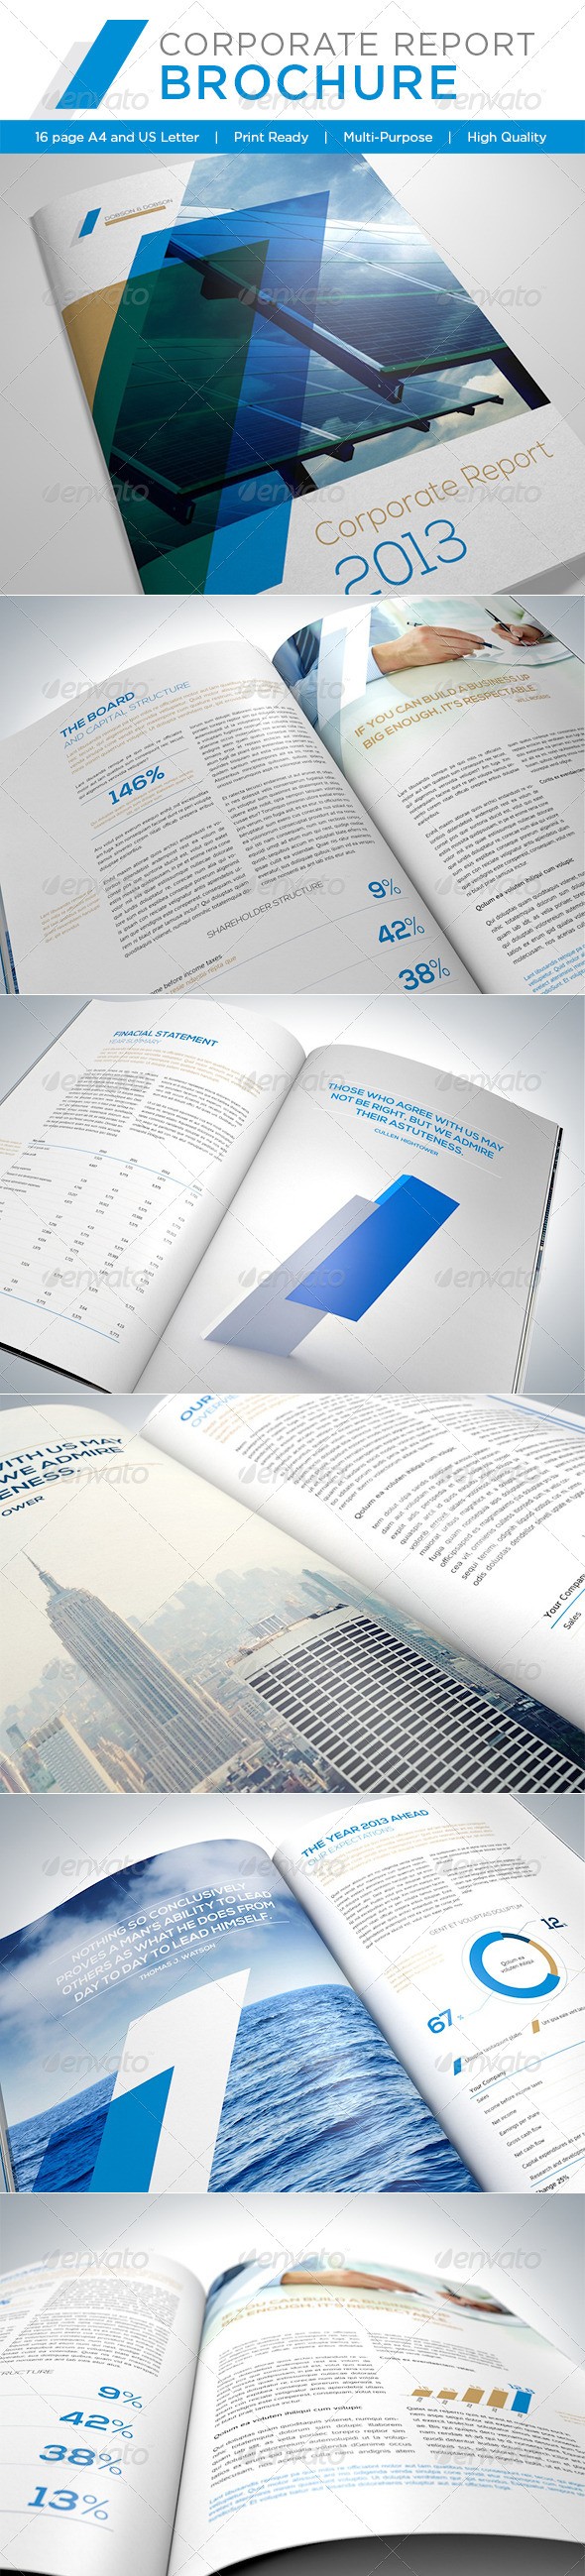 Corporate Report Brochure